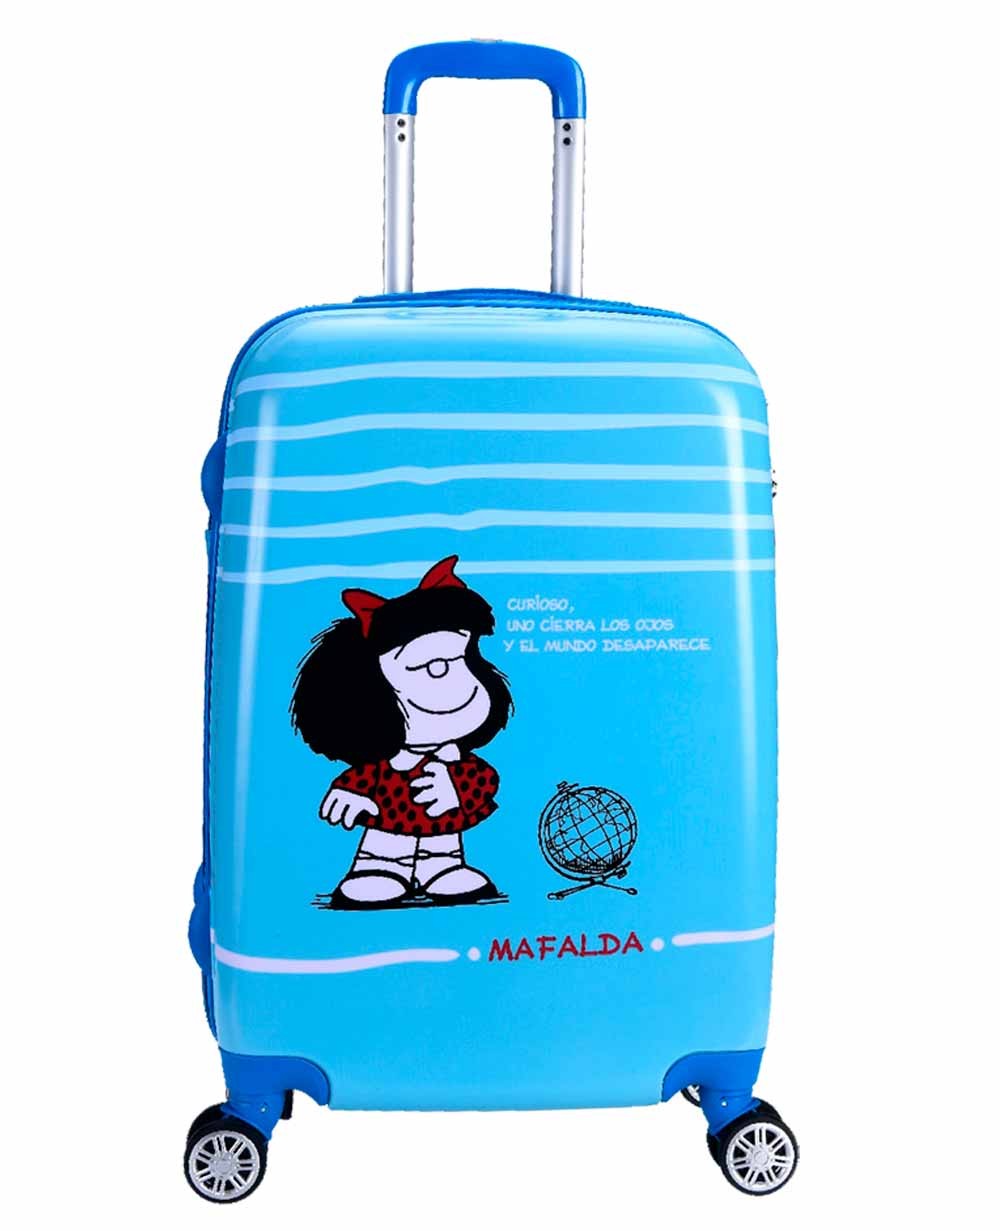 La maleta Mafalda como símbolo de rebeldía y humor inteligente